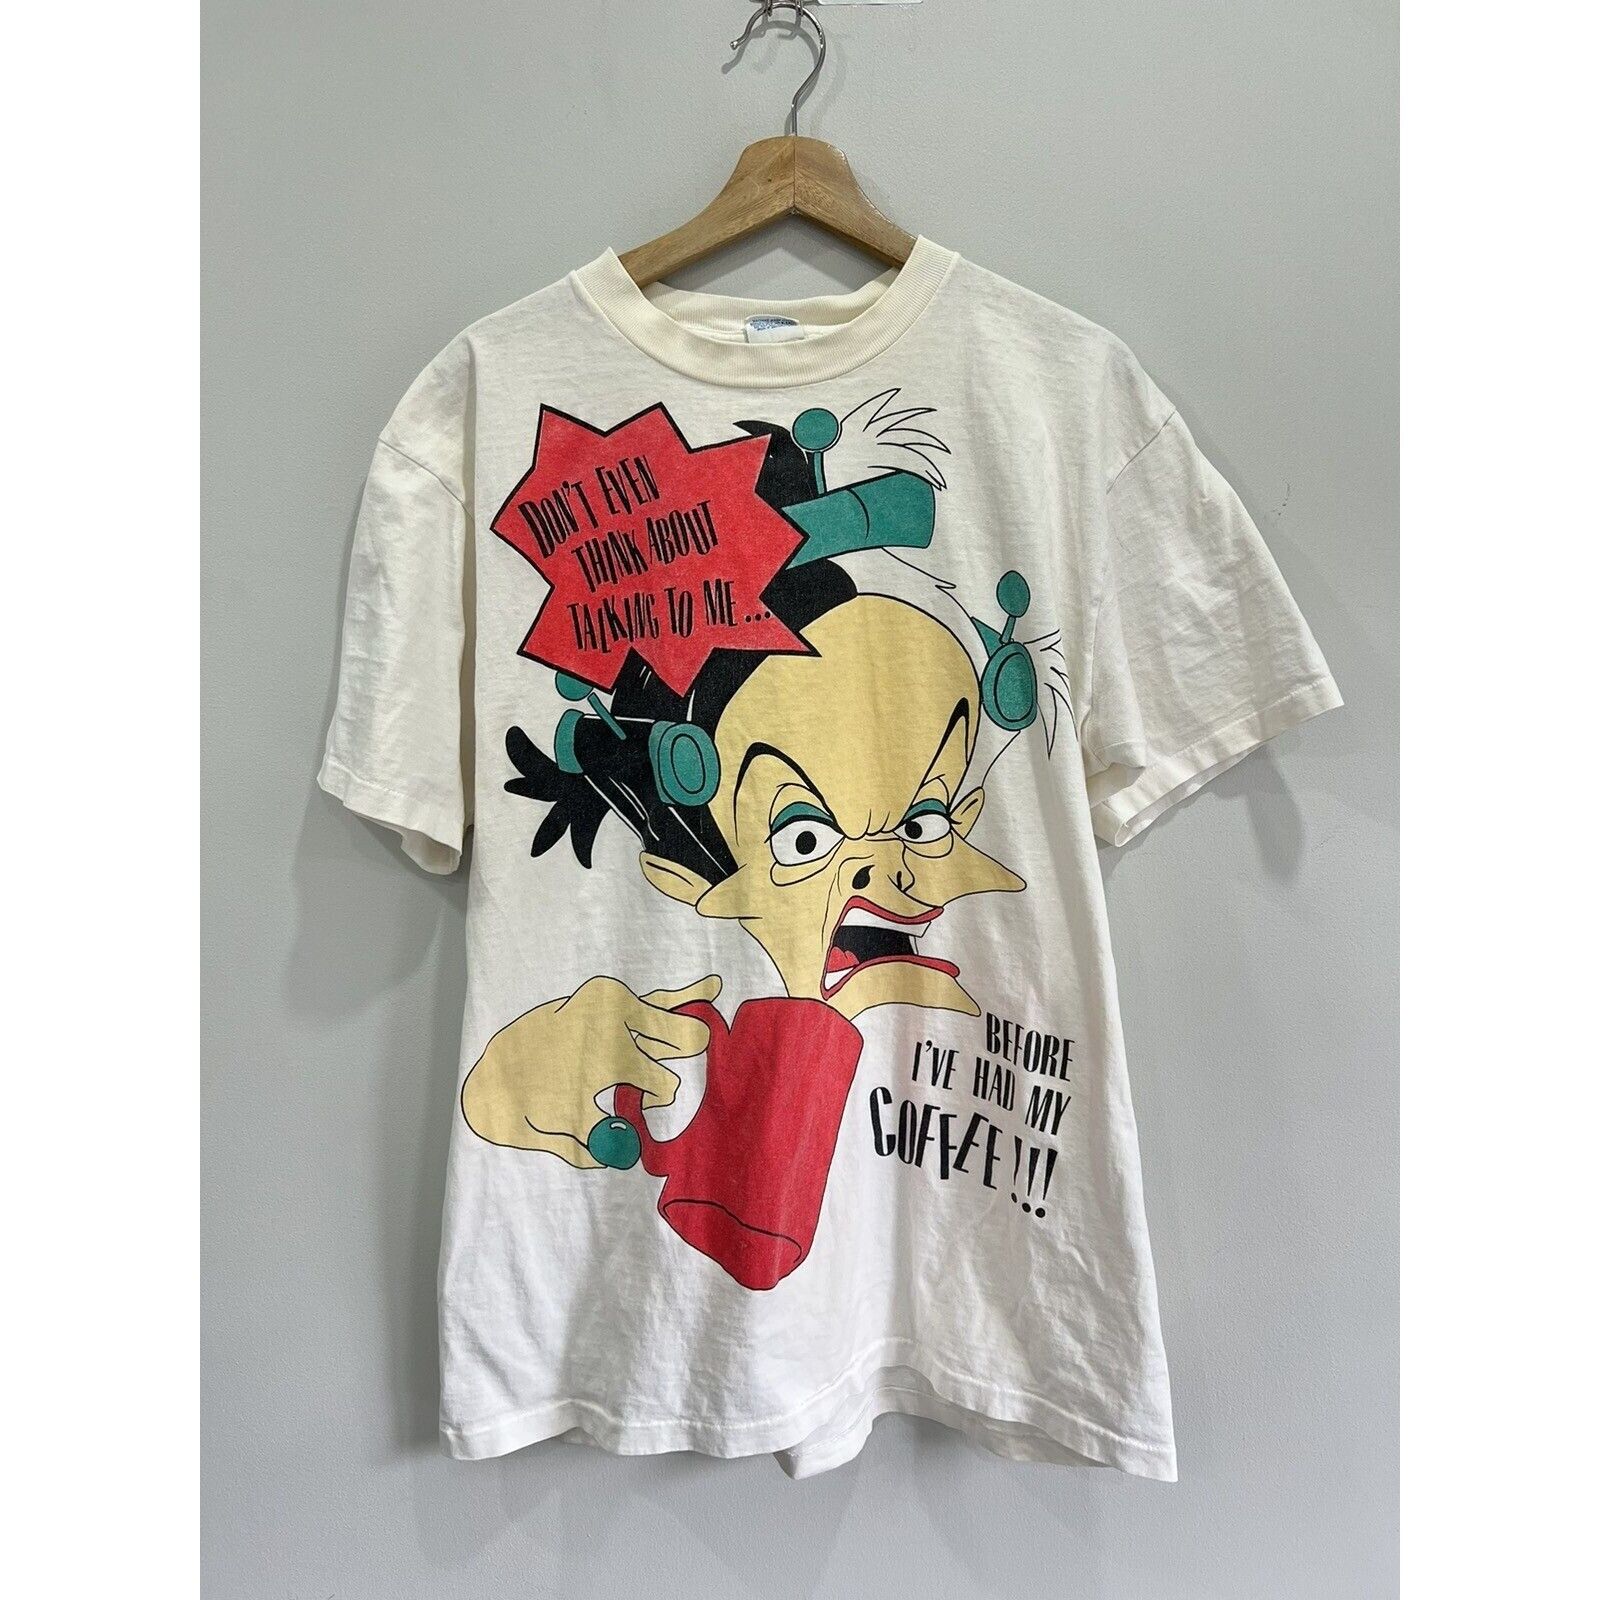 Vintage 90s Cruella Deville Disney Tee Shirt Coffee